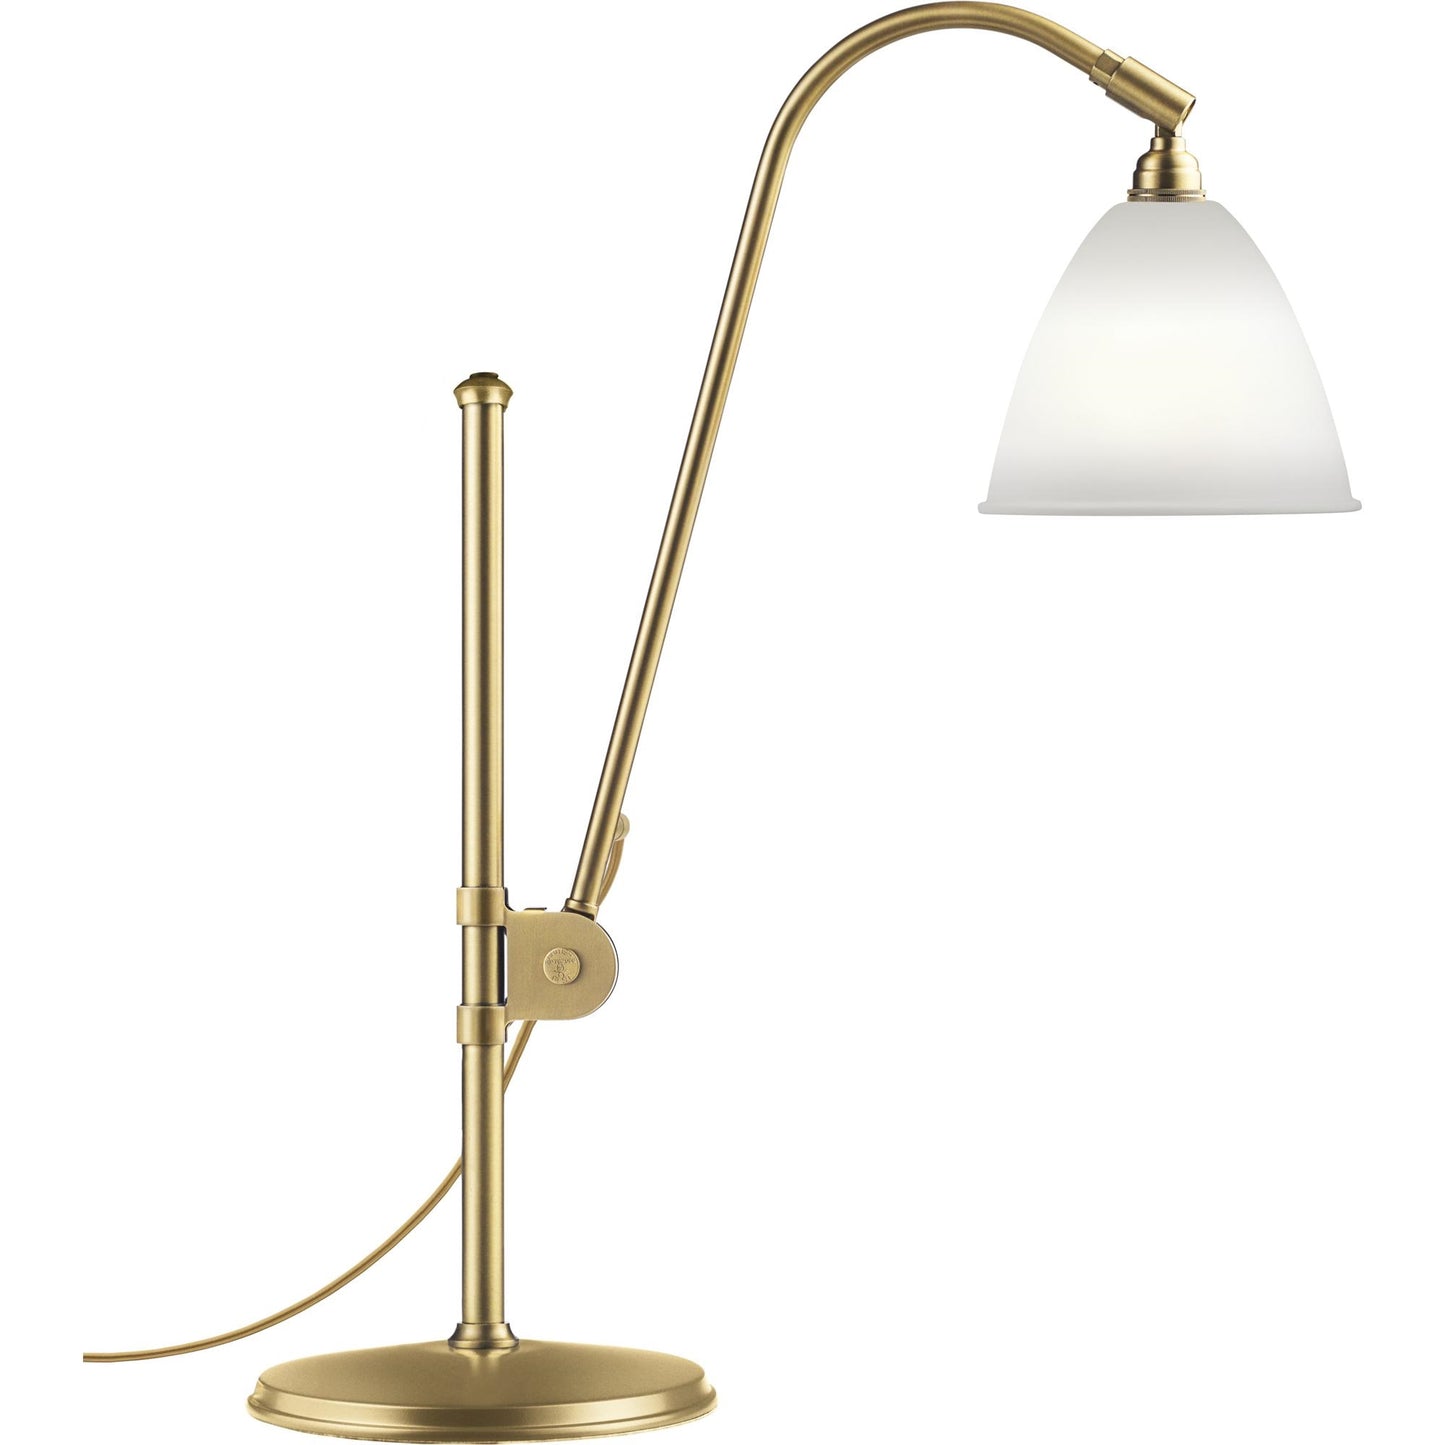 Bestlite BL1 Table Lamp by GUBI #Brass / Porcelain